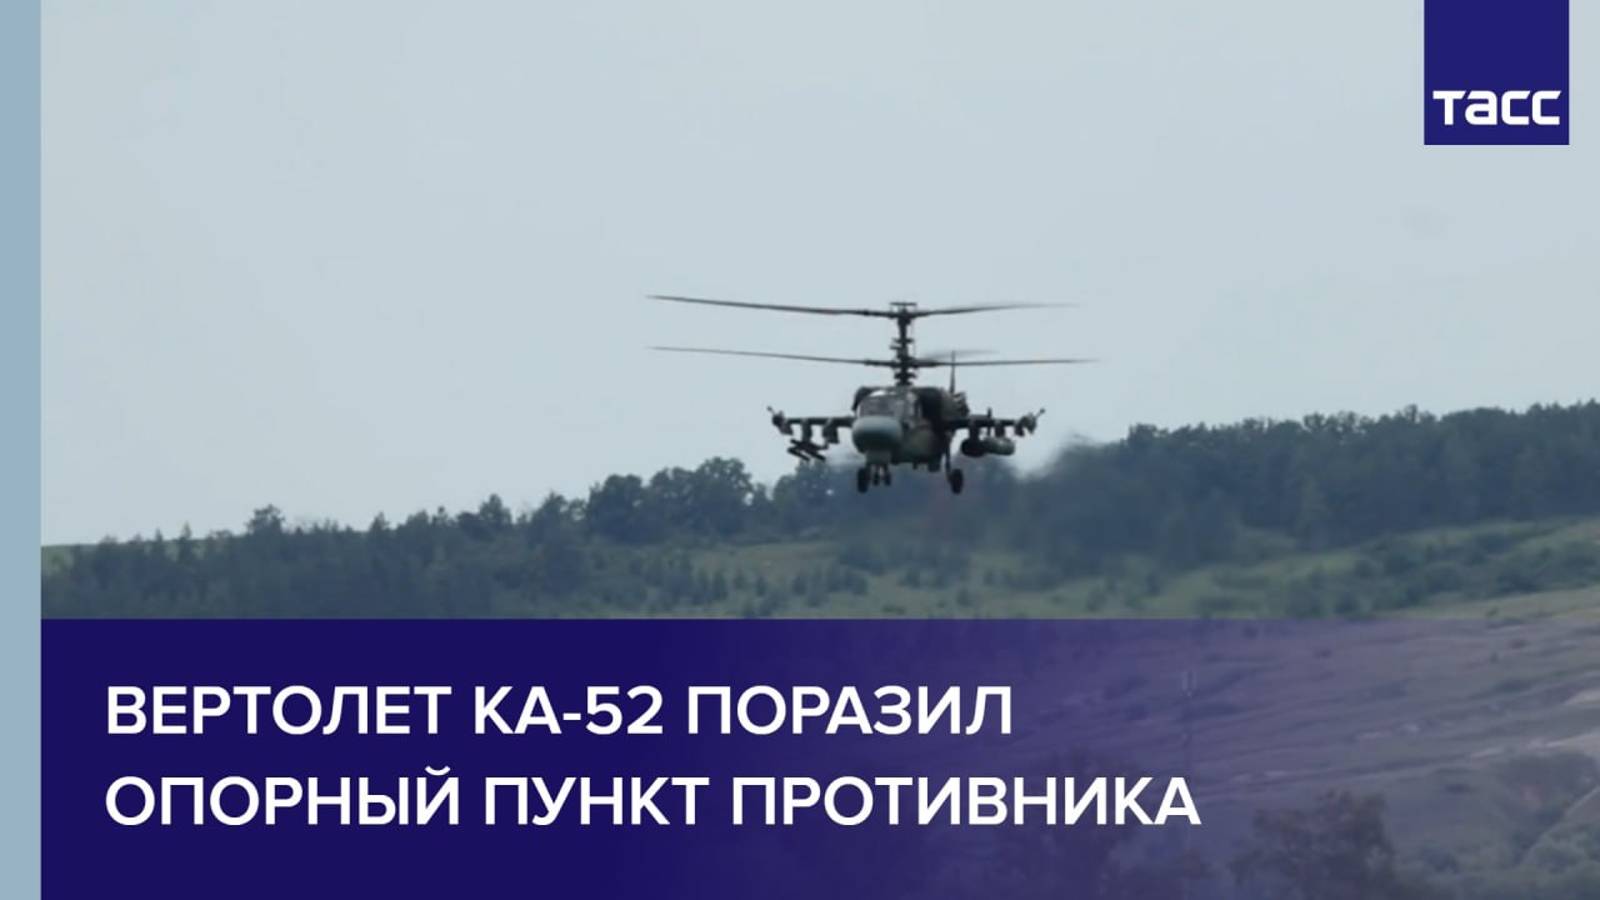 Вертолет Ка-52 поразил опорный пункт противника